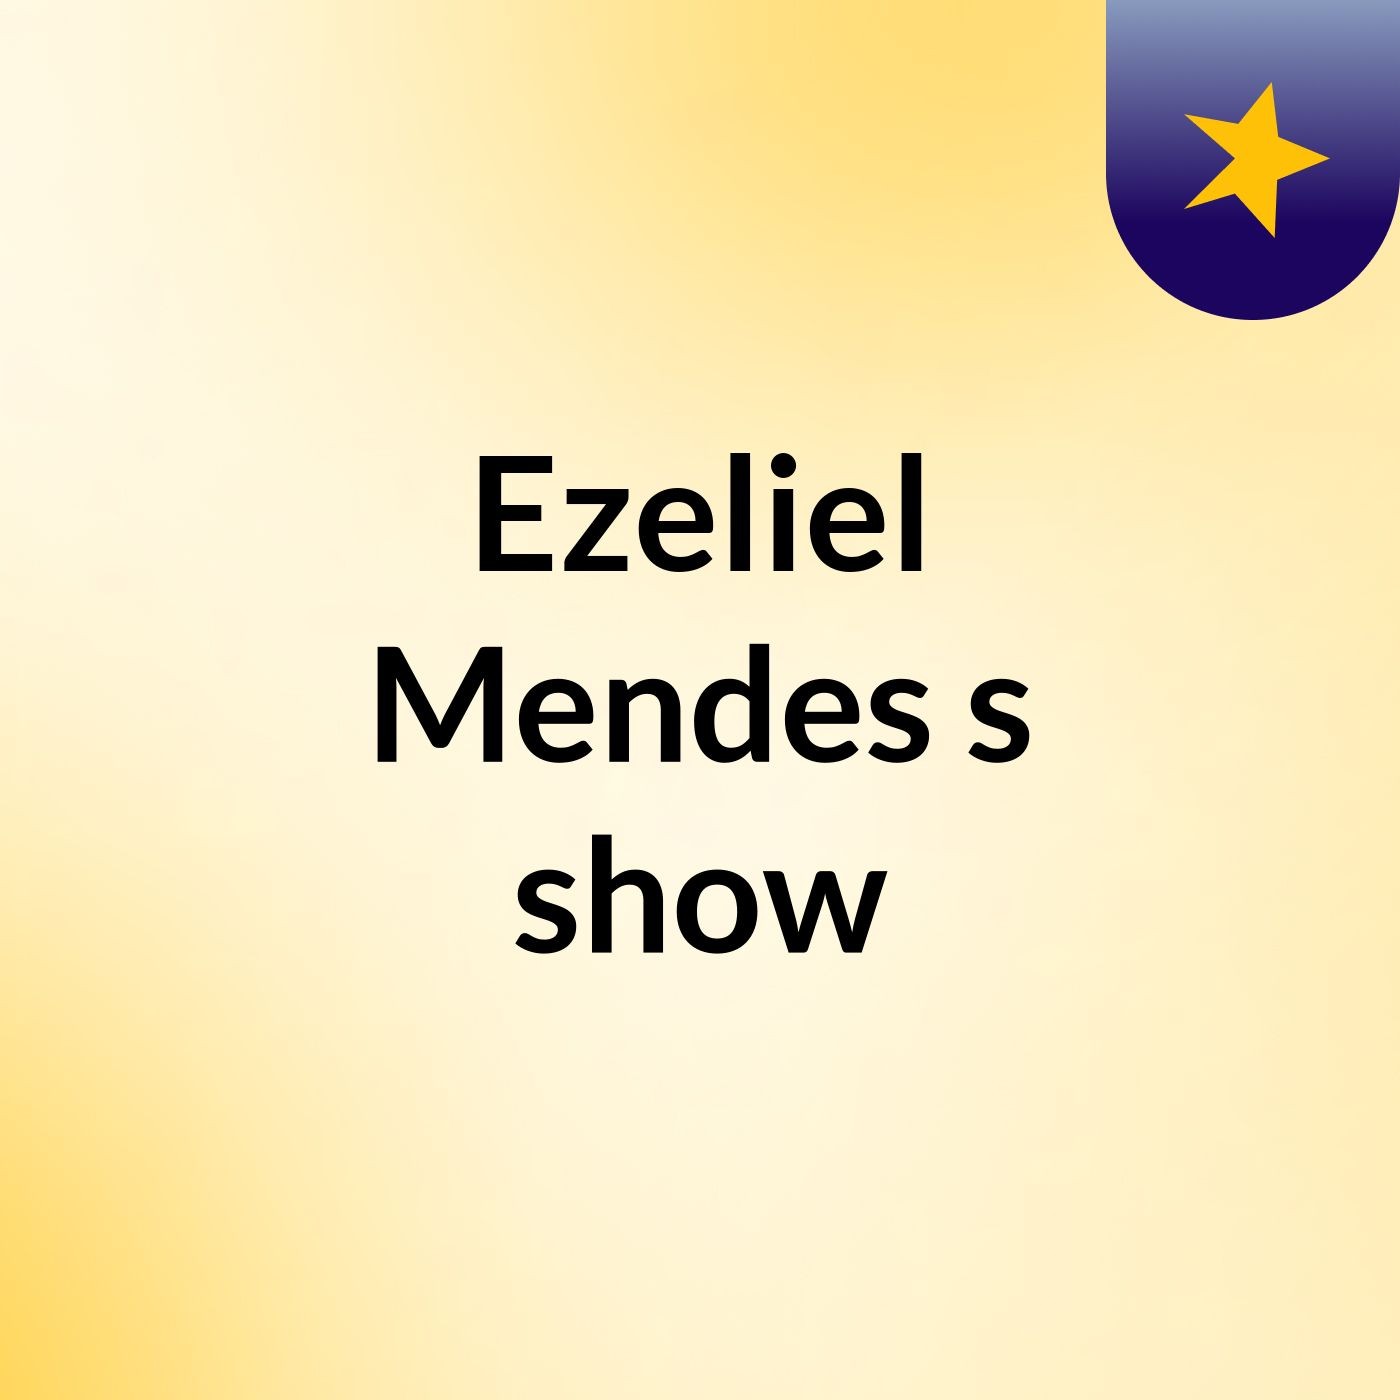 Ezeliel Mendes's show